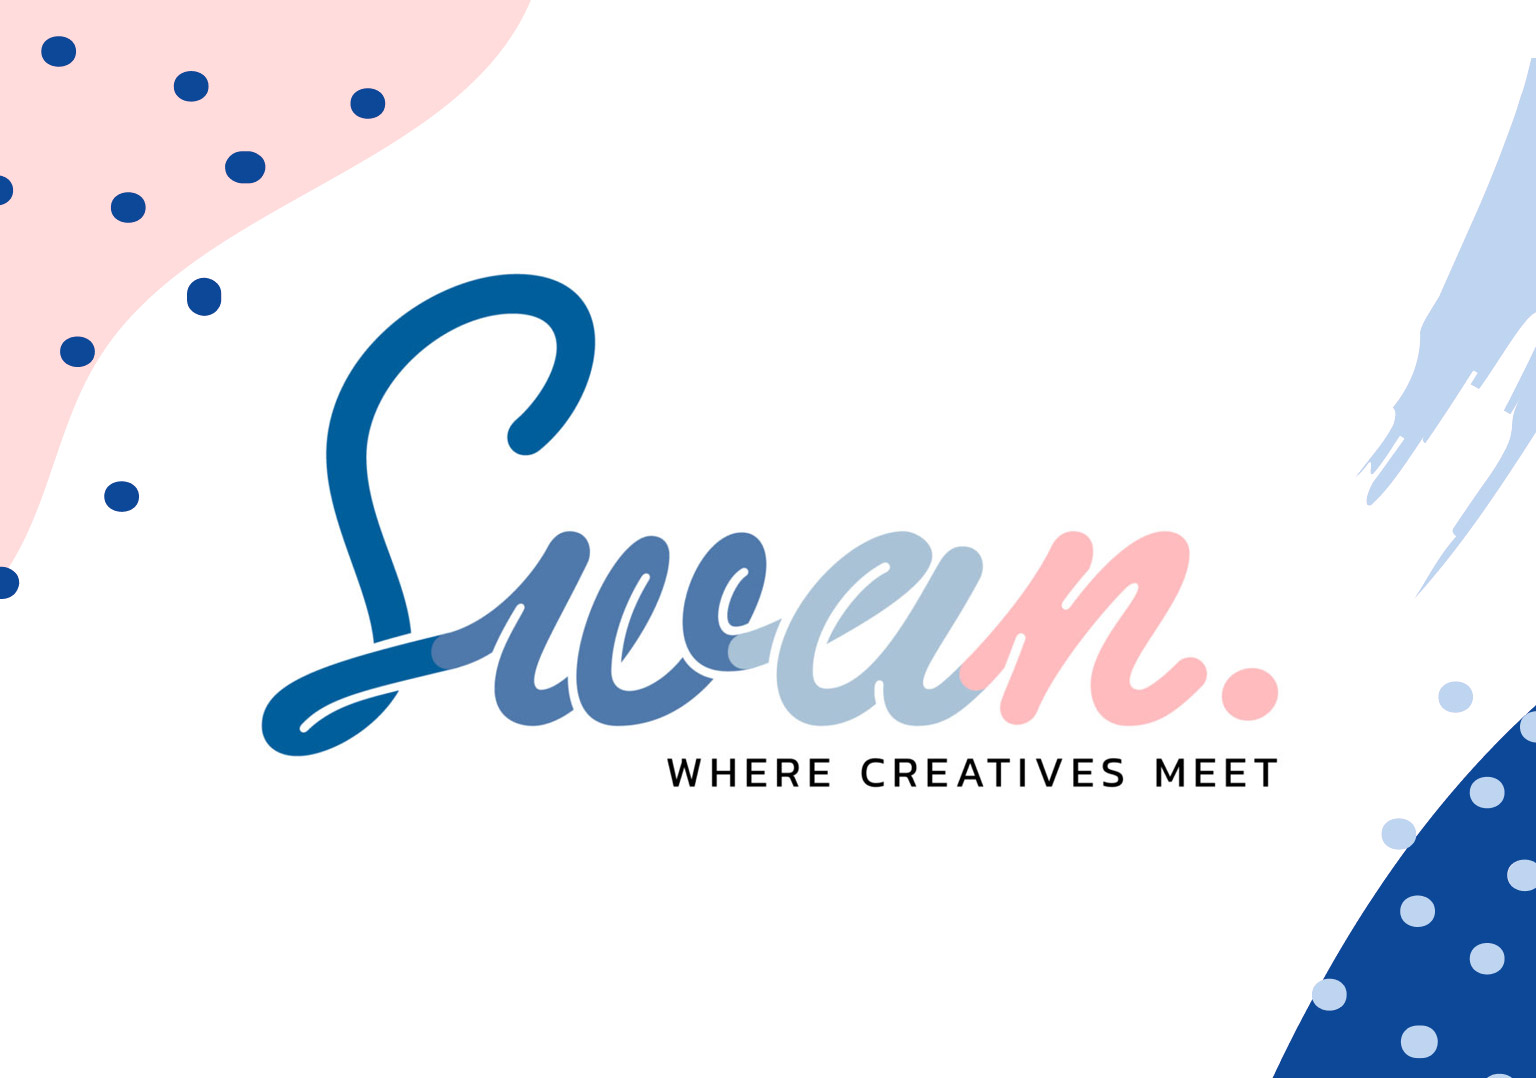 Swan where creatives meet